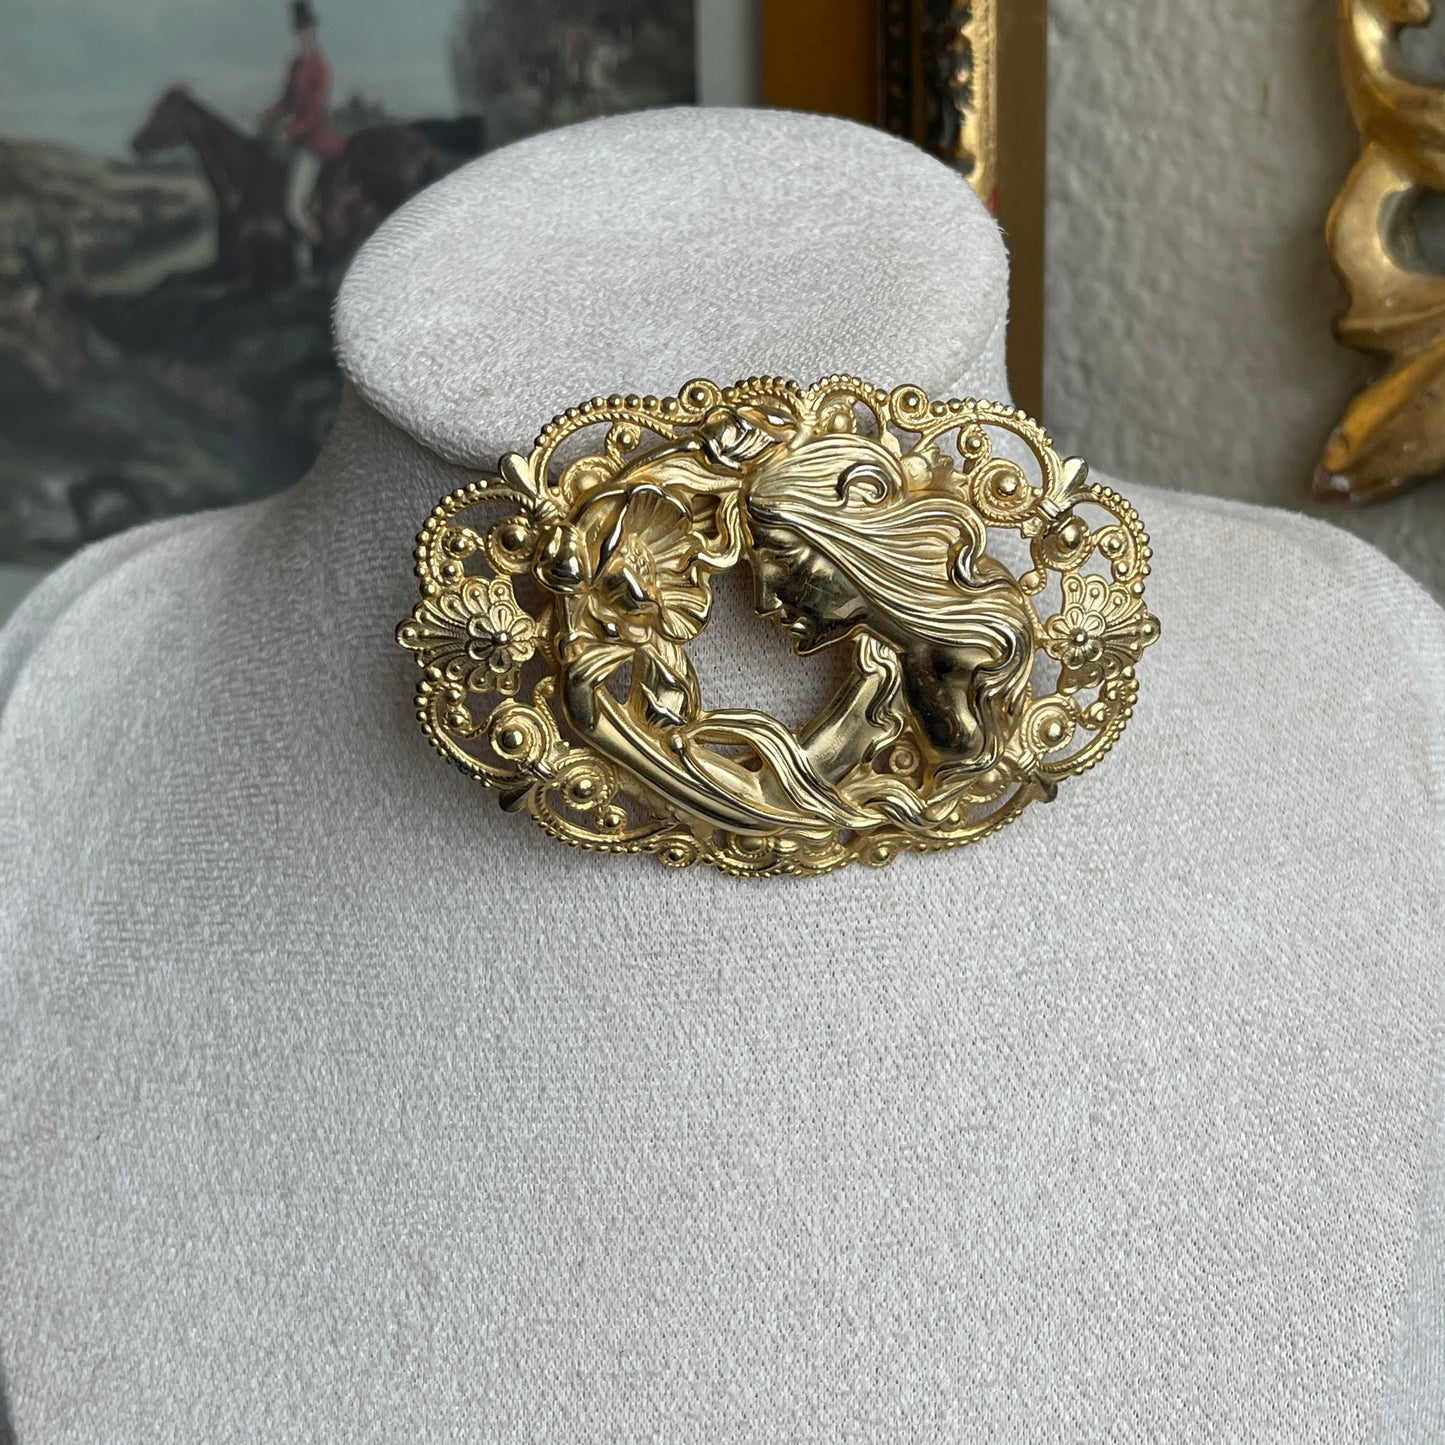 Vintage Art Nouveau gold tone Woman brooch